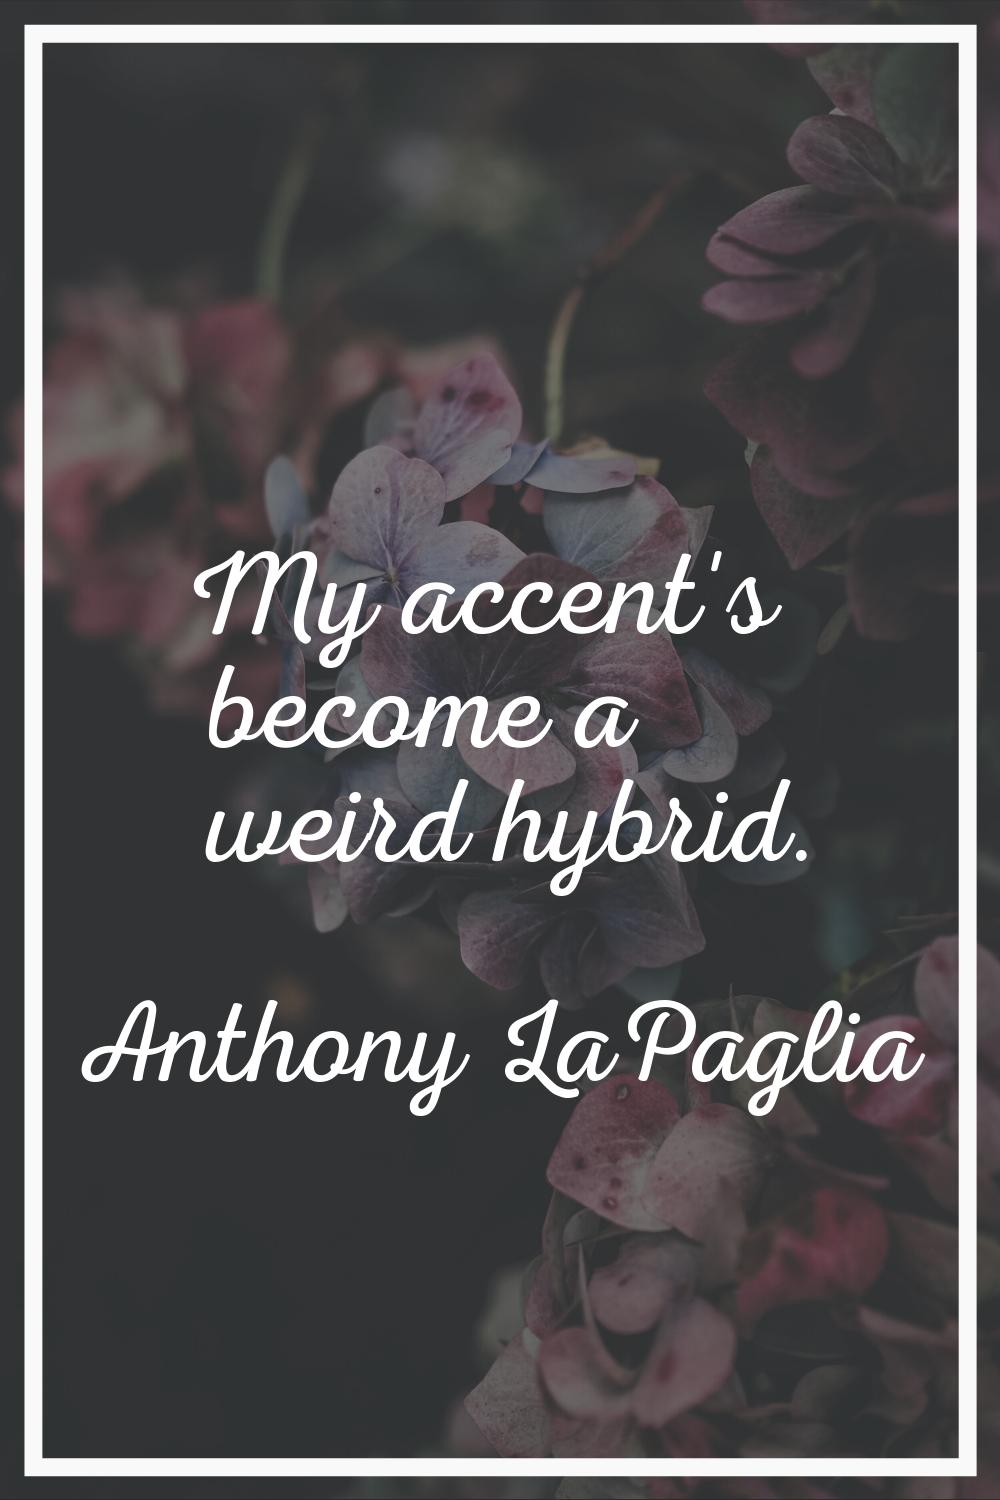 My accent's become a weird hybrid.